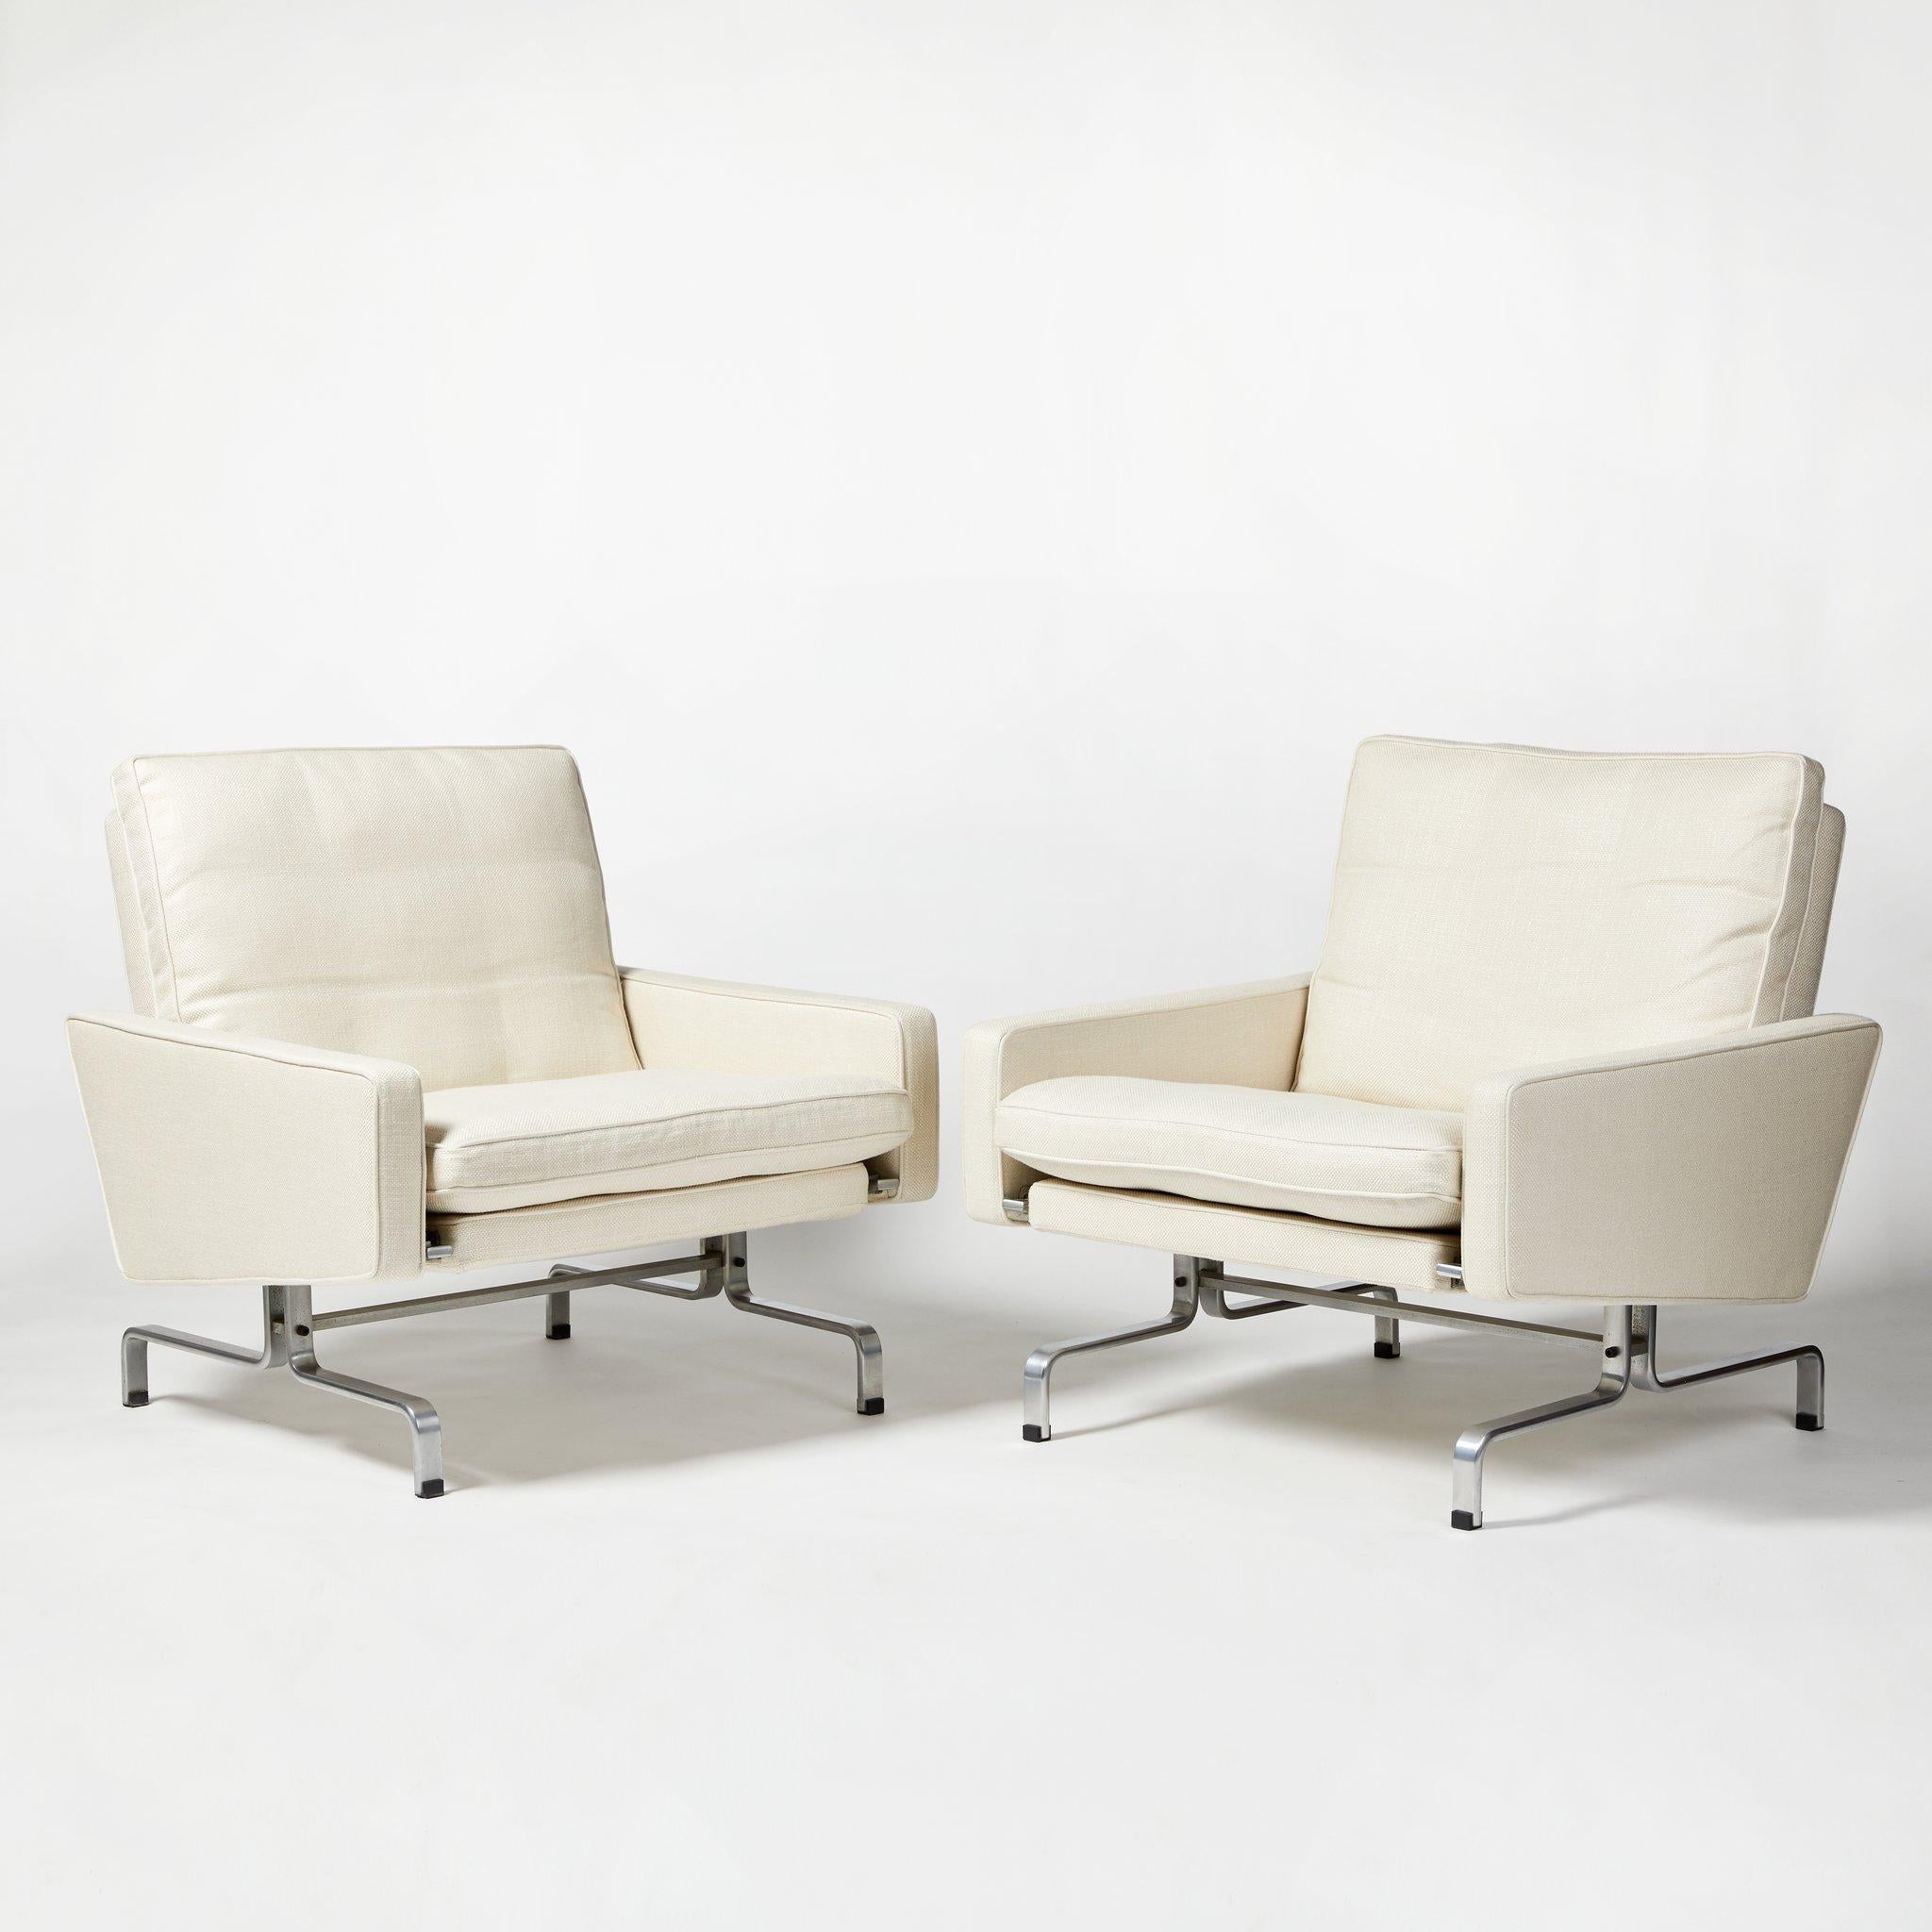 Danish Poul Kjaerholm Lounge Chairs PK 31 for E. Kold Christensen, Set of 2